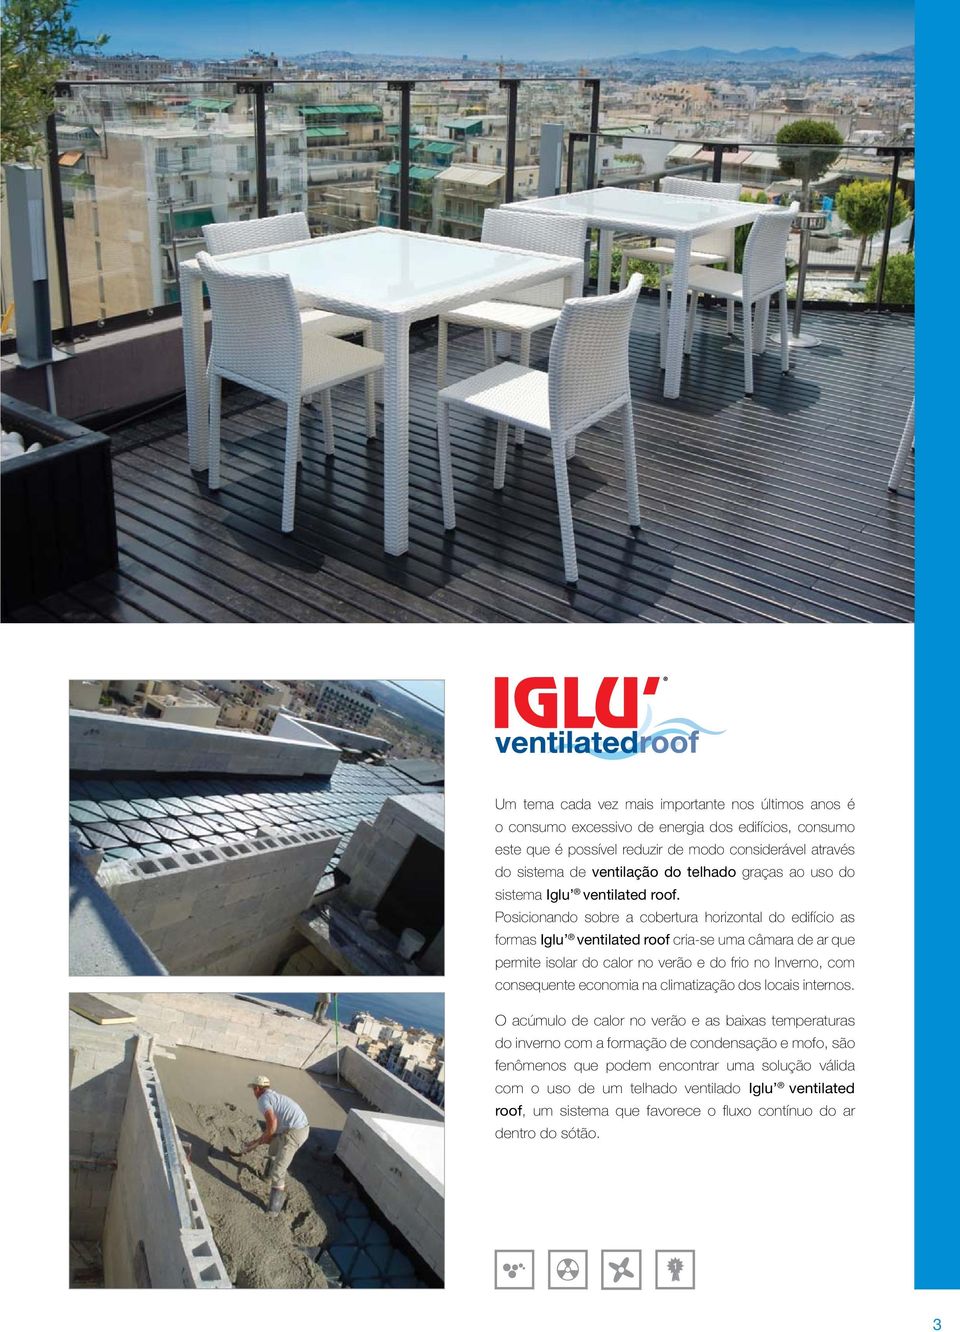 Posicionando sobre a cobertura horizontal do edifício as formas Iglu ventilated roof cria-se uma câmara de ar que permite isolar do calor no verão e do frio no Inverno, com consequente